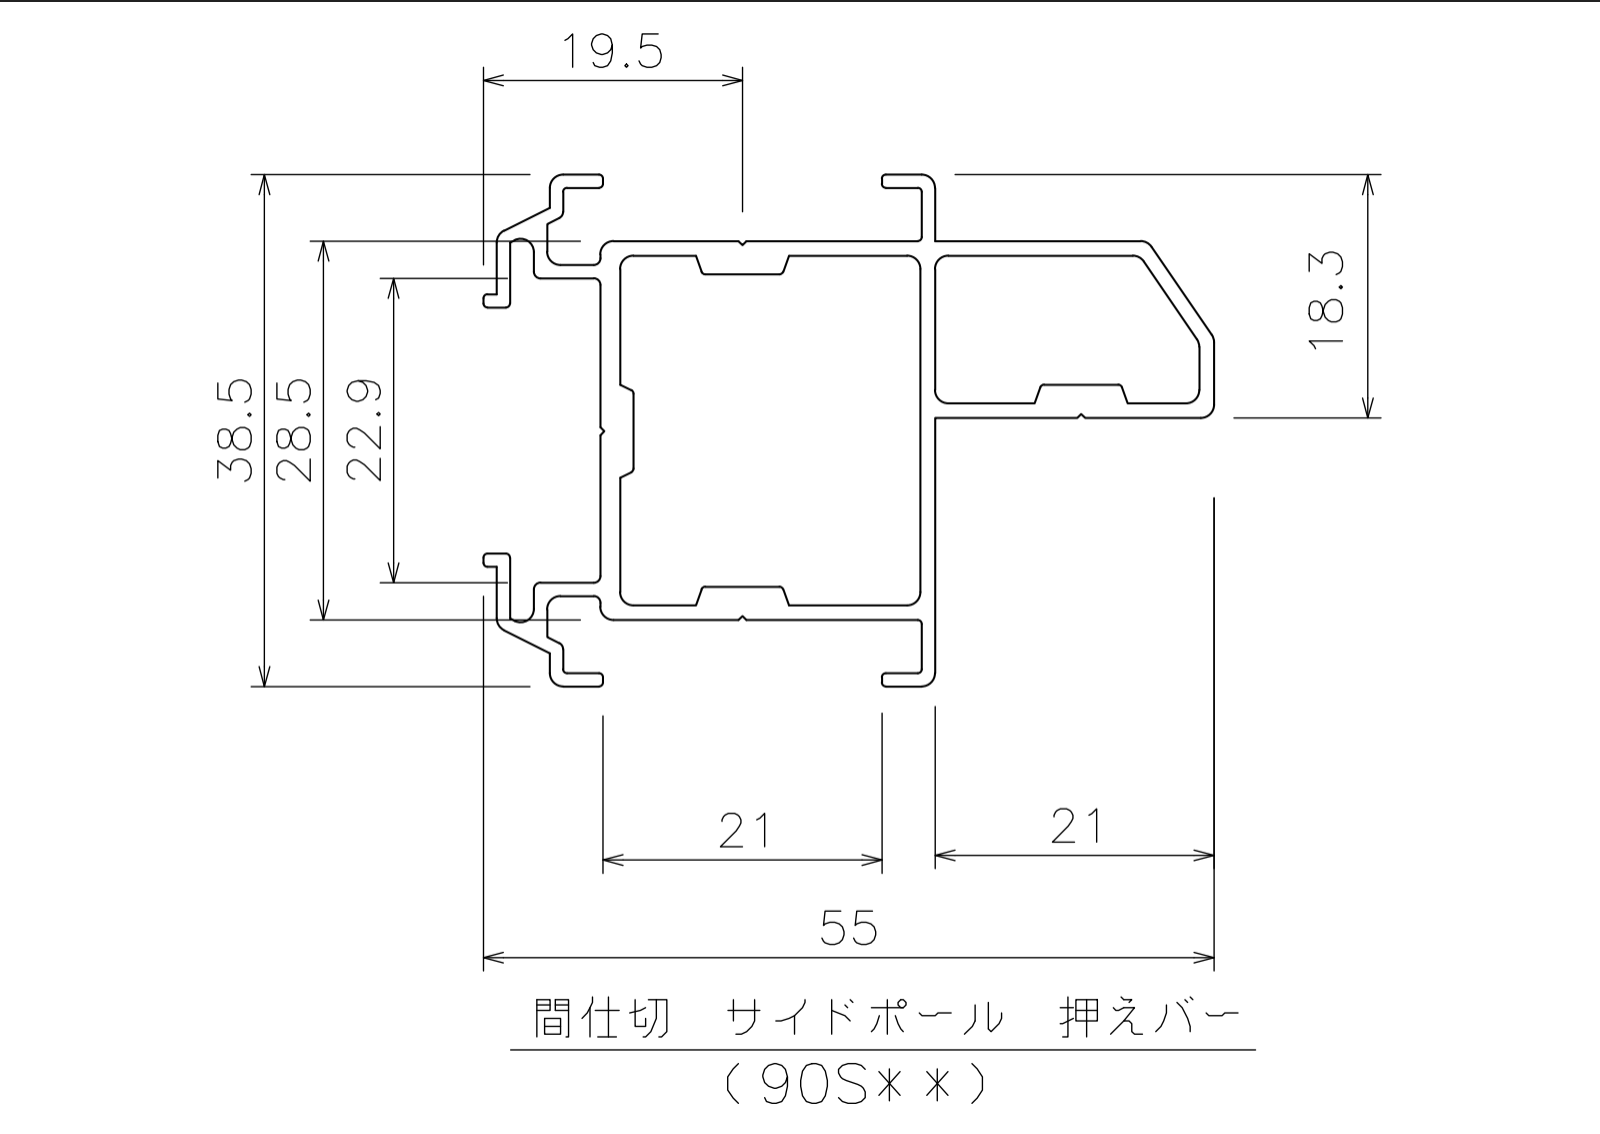 間仕切サイドポール【押えバータイプ】2mの寸法図-1